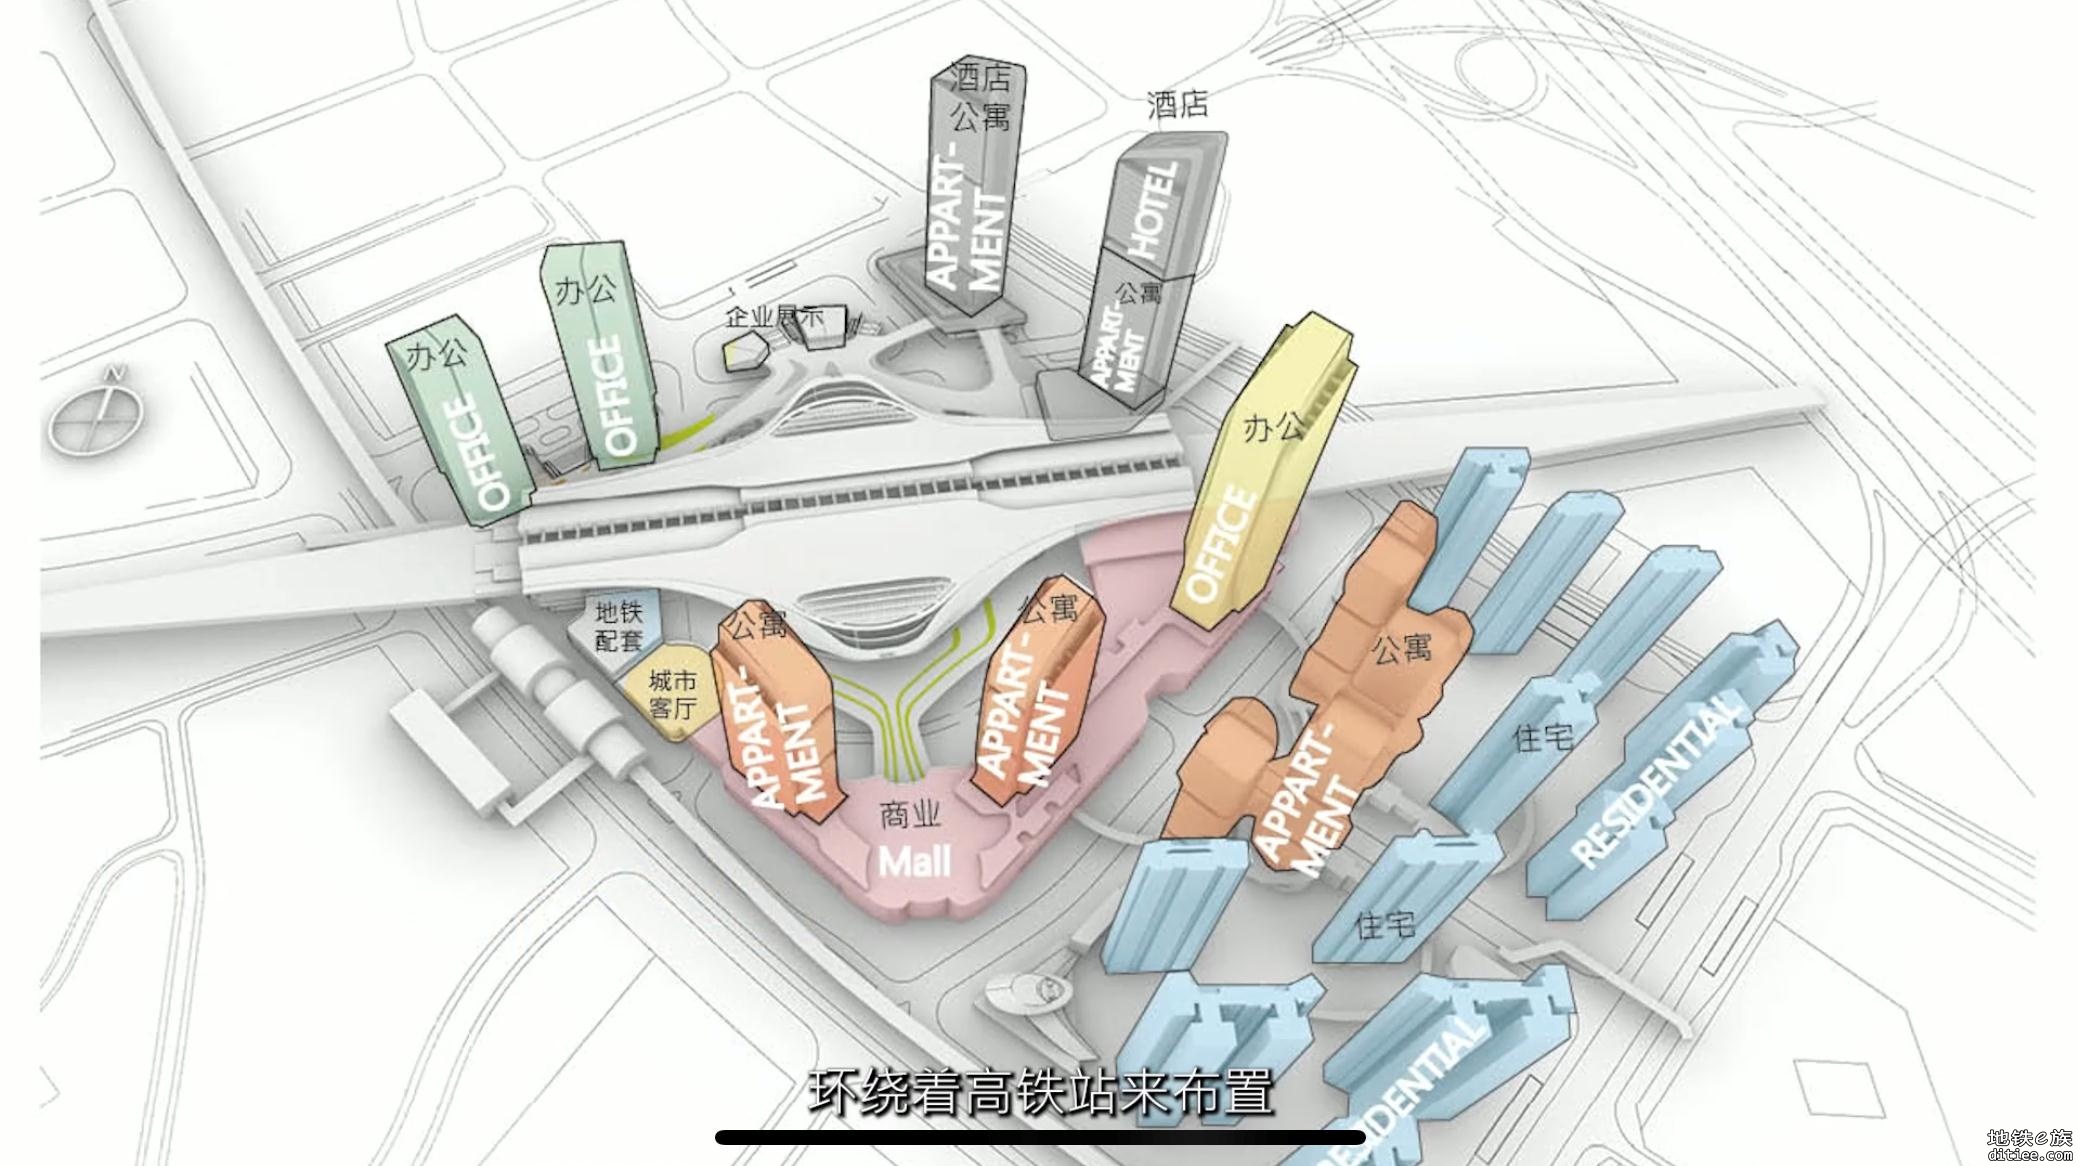 关于虎门站在建的立体换乘中心 - 东莞地铁 地铁e族